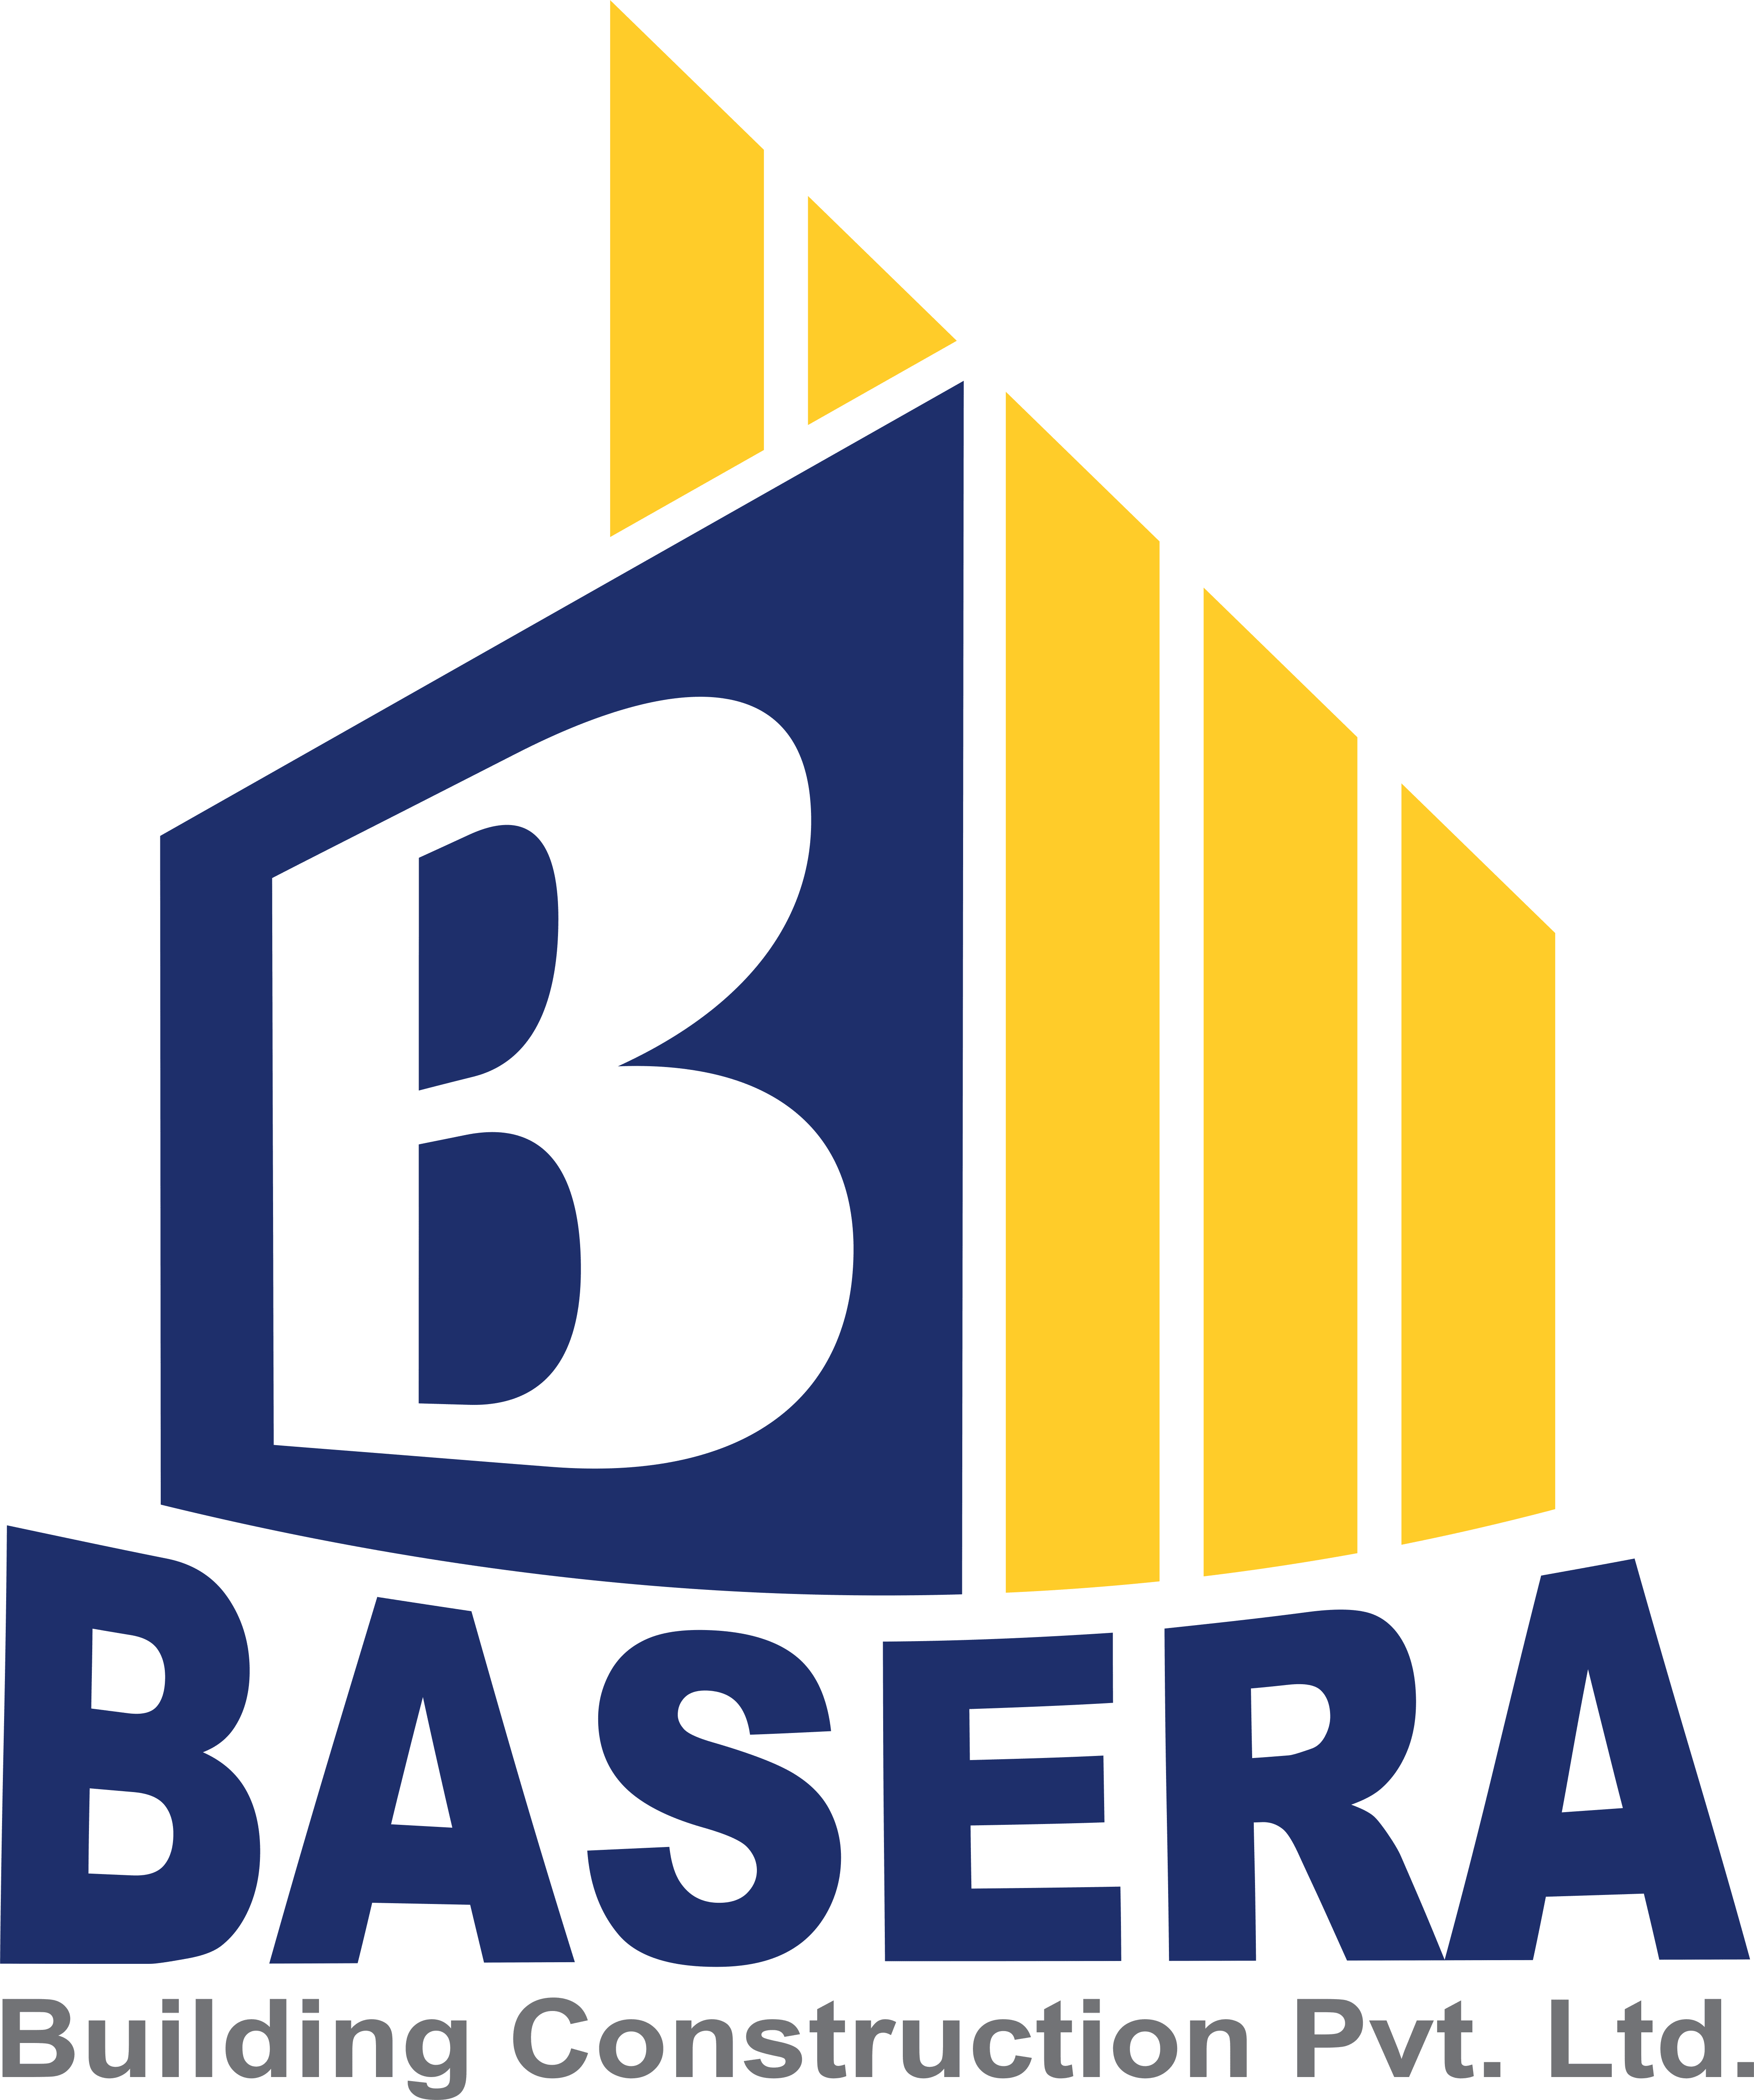 Basera Building Construction Pvt. Ltd.